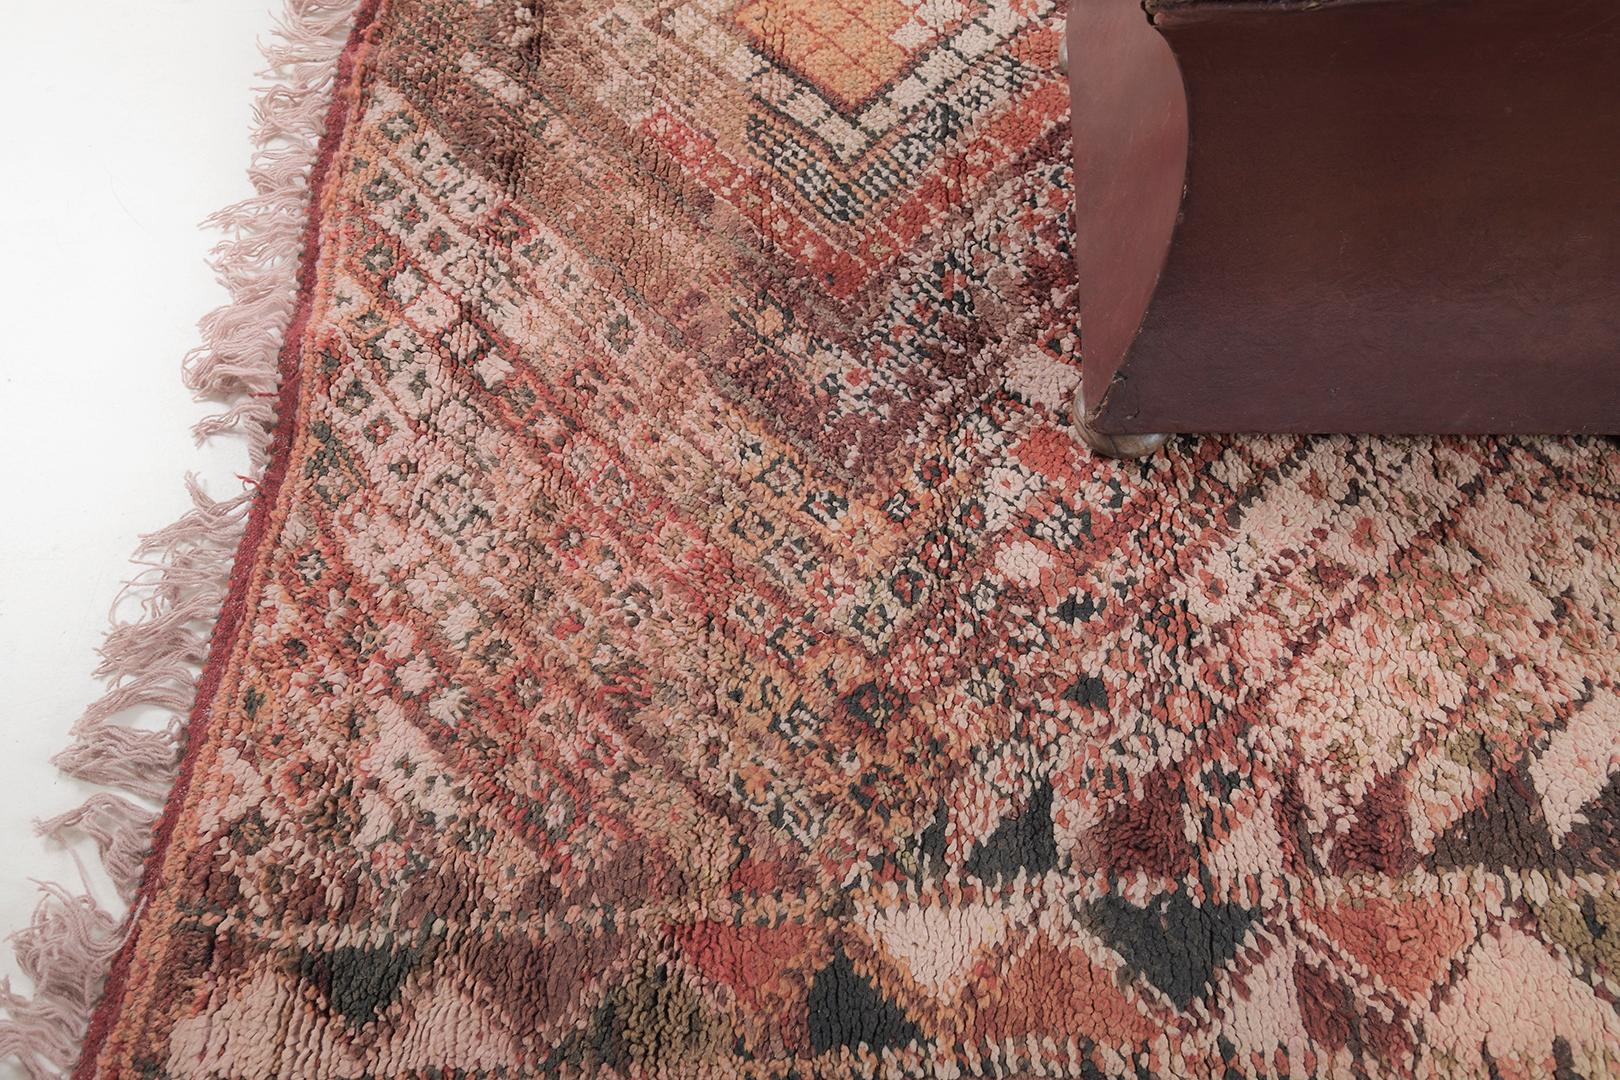 Verspielte Farben und Schattierungen von Zickzack- und Rautenmustern spiegeln sich in diesem atemberaubenden marokkanischen Beni M'Guild-Teppich wider. Dieser Teppich fordert die Kreativität und das Fachwissen eines jeden Designers heraus. Mit